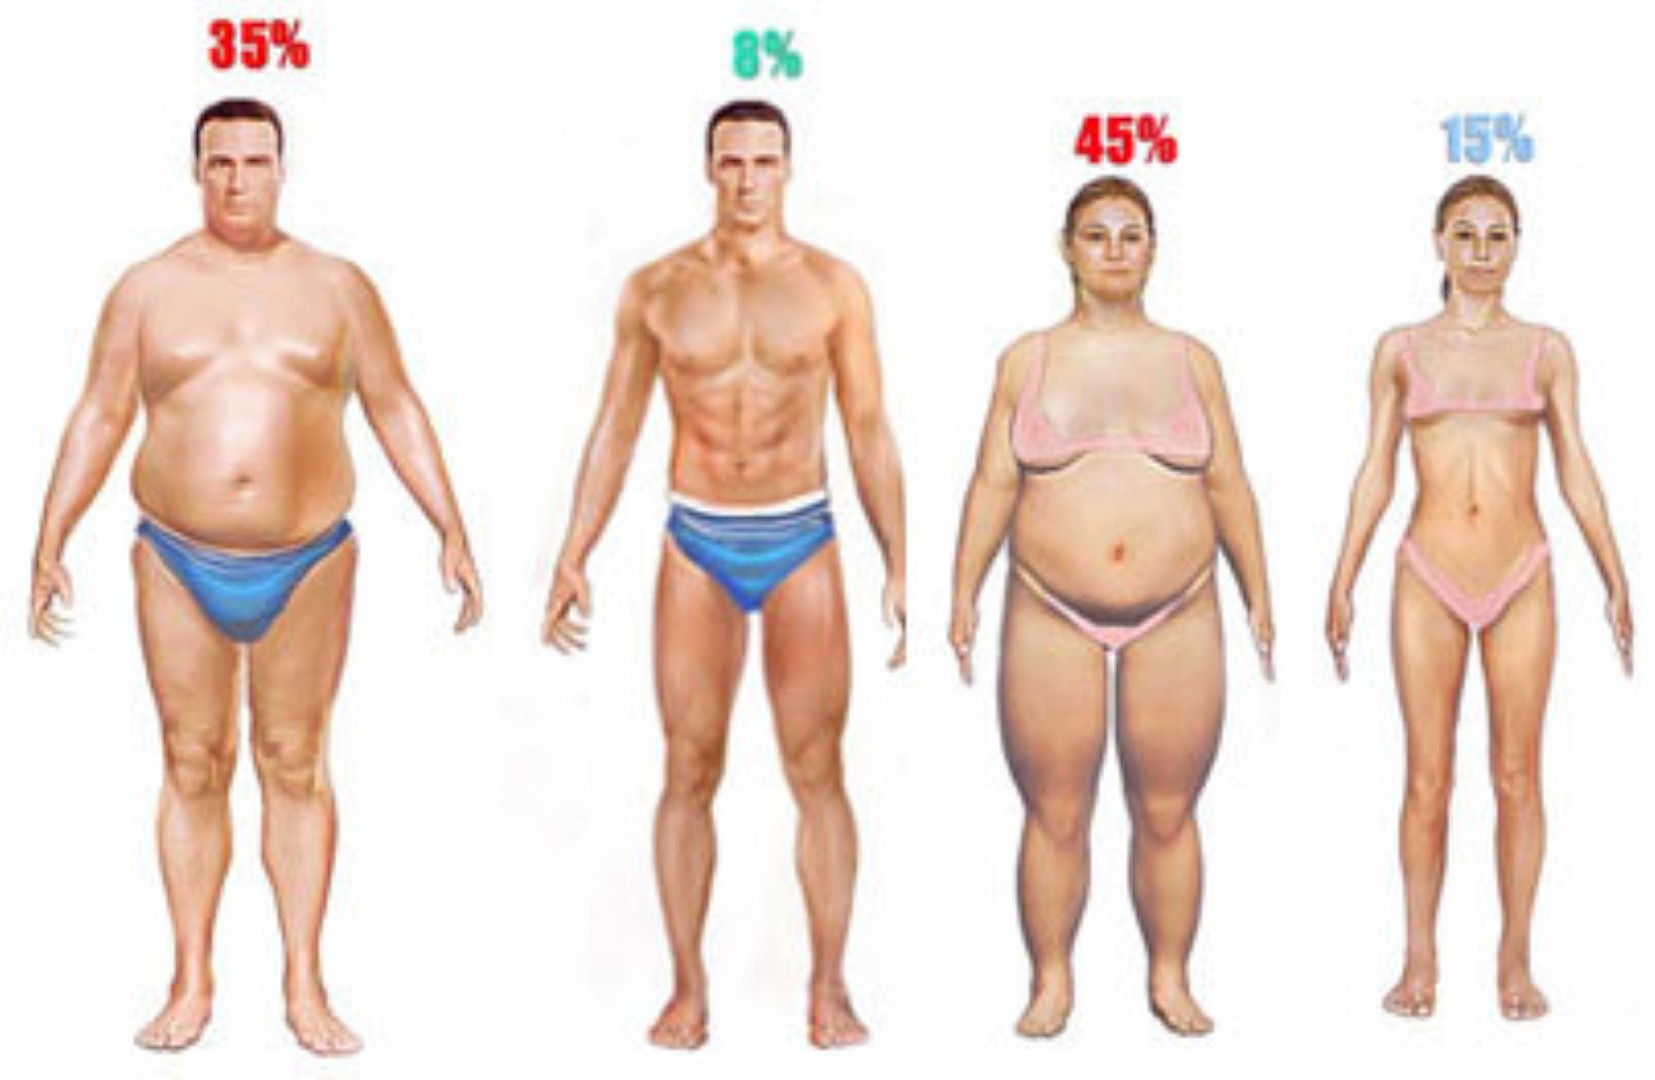 Процент жирности человека